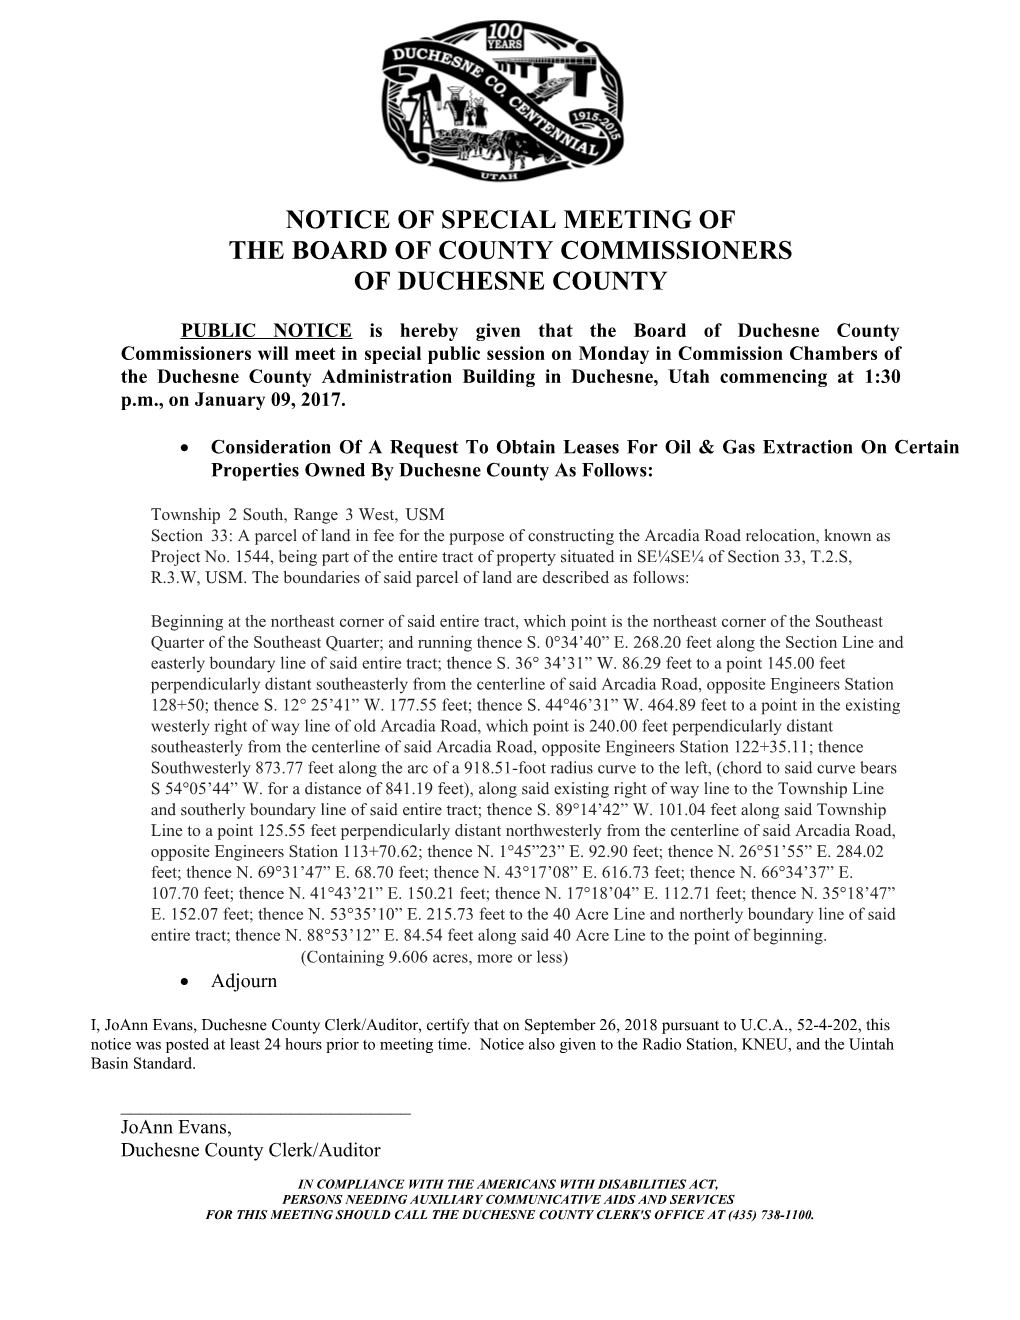 Notice of Regular Meeting Dec 10, 2001